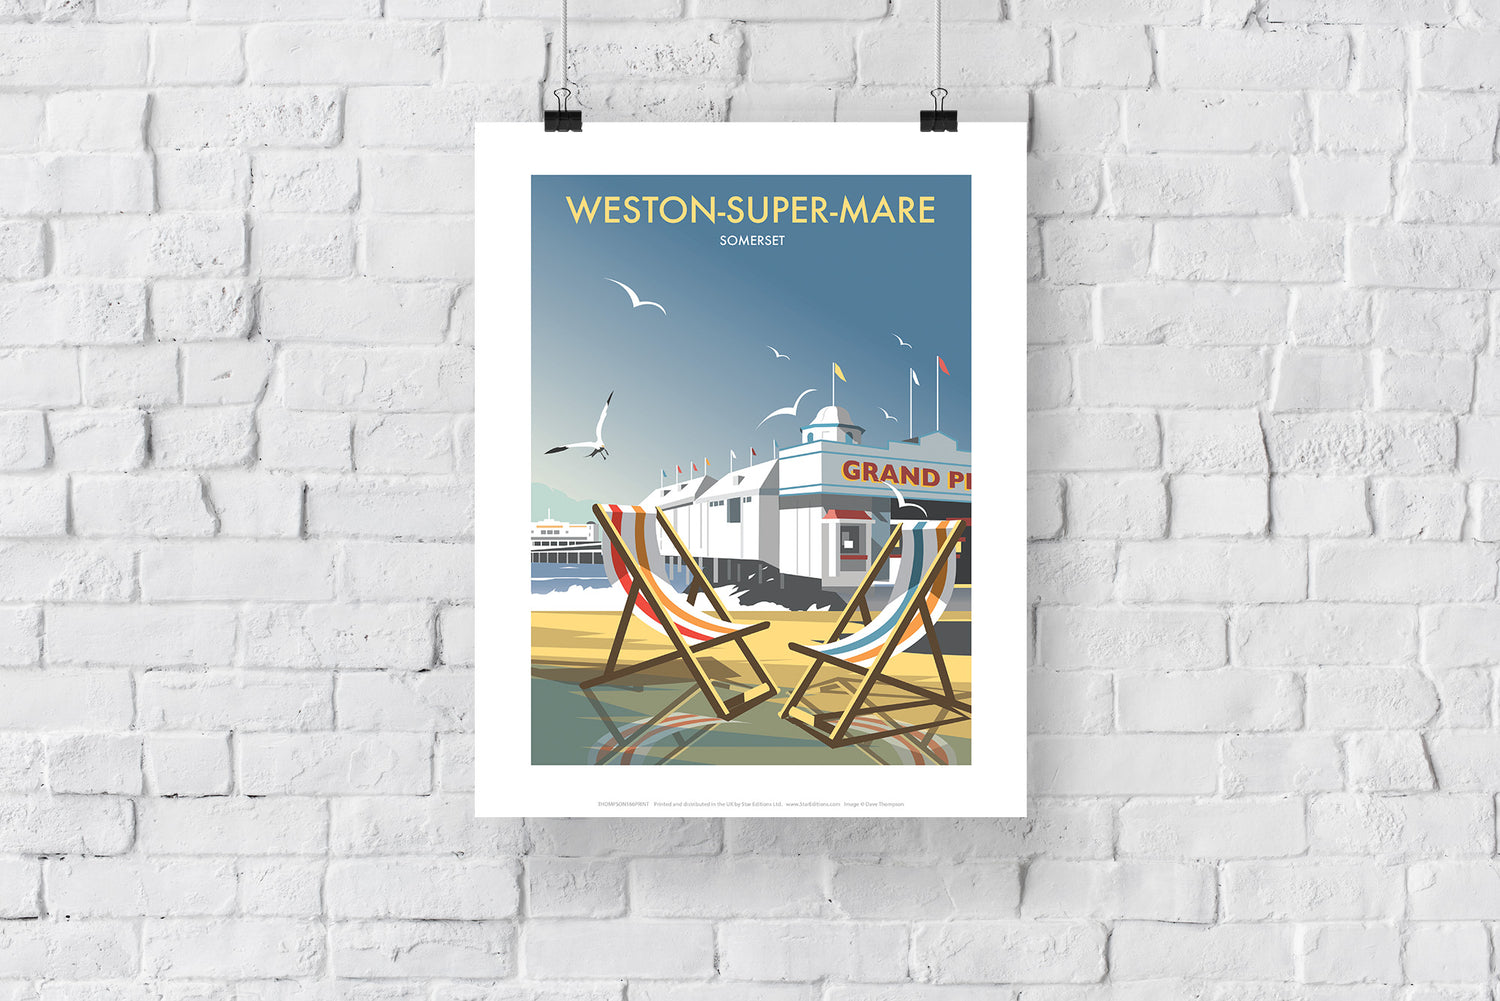 Weston Super Mare - Art Print